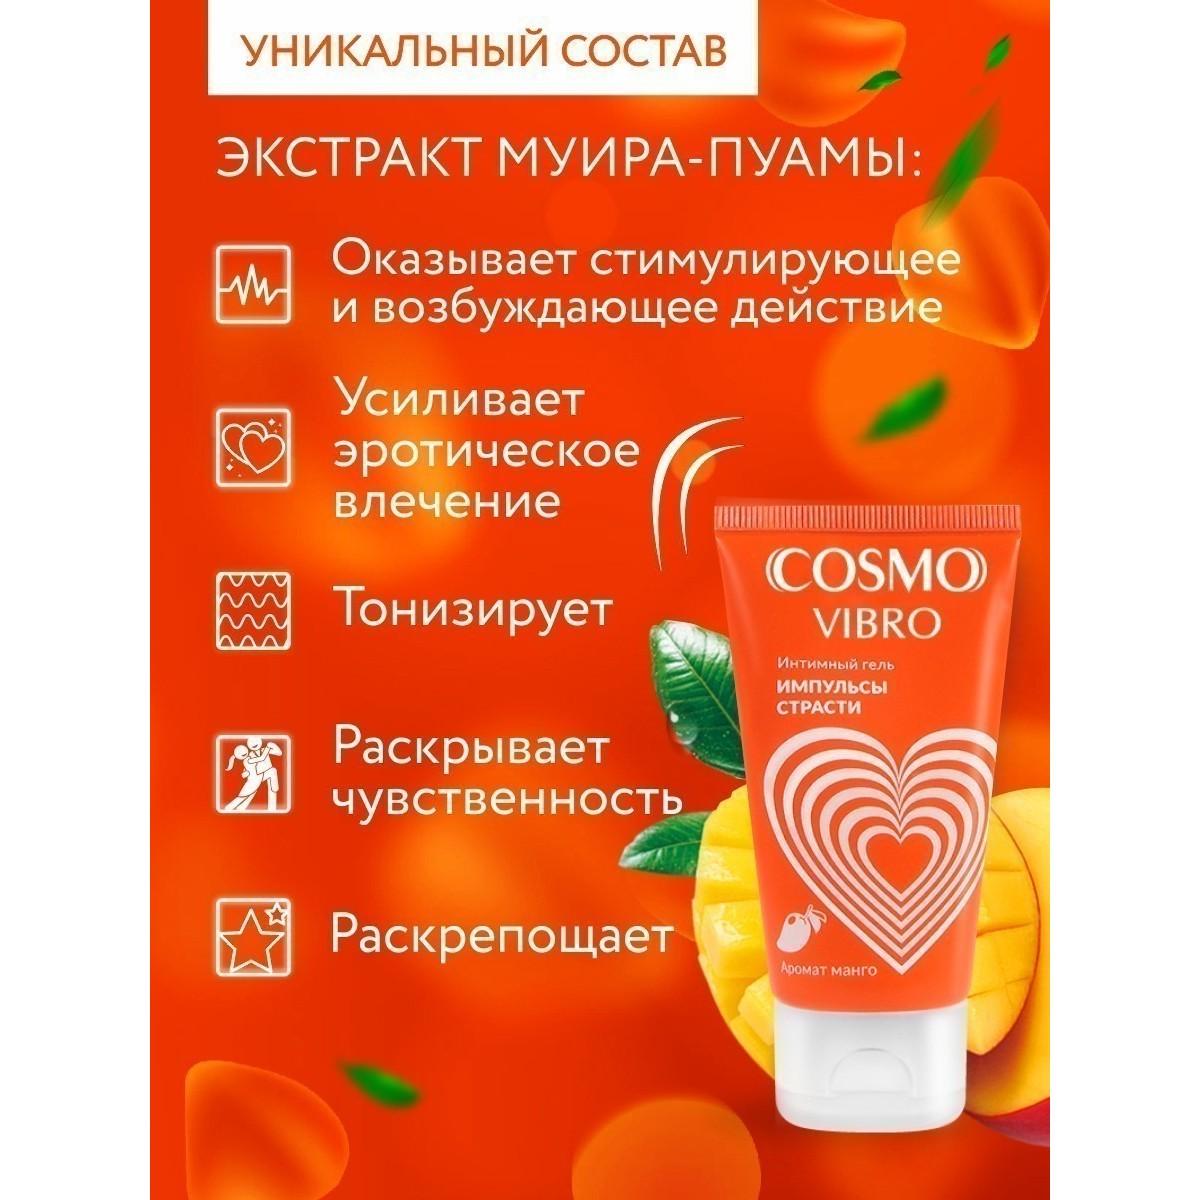 Интимный гель COSMO VIBRO TROPIC для женщин 50 г арт. LB-23175 Vestalshop.ru - Изображение 4